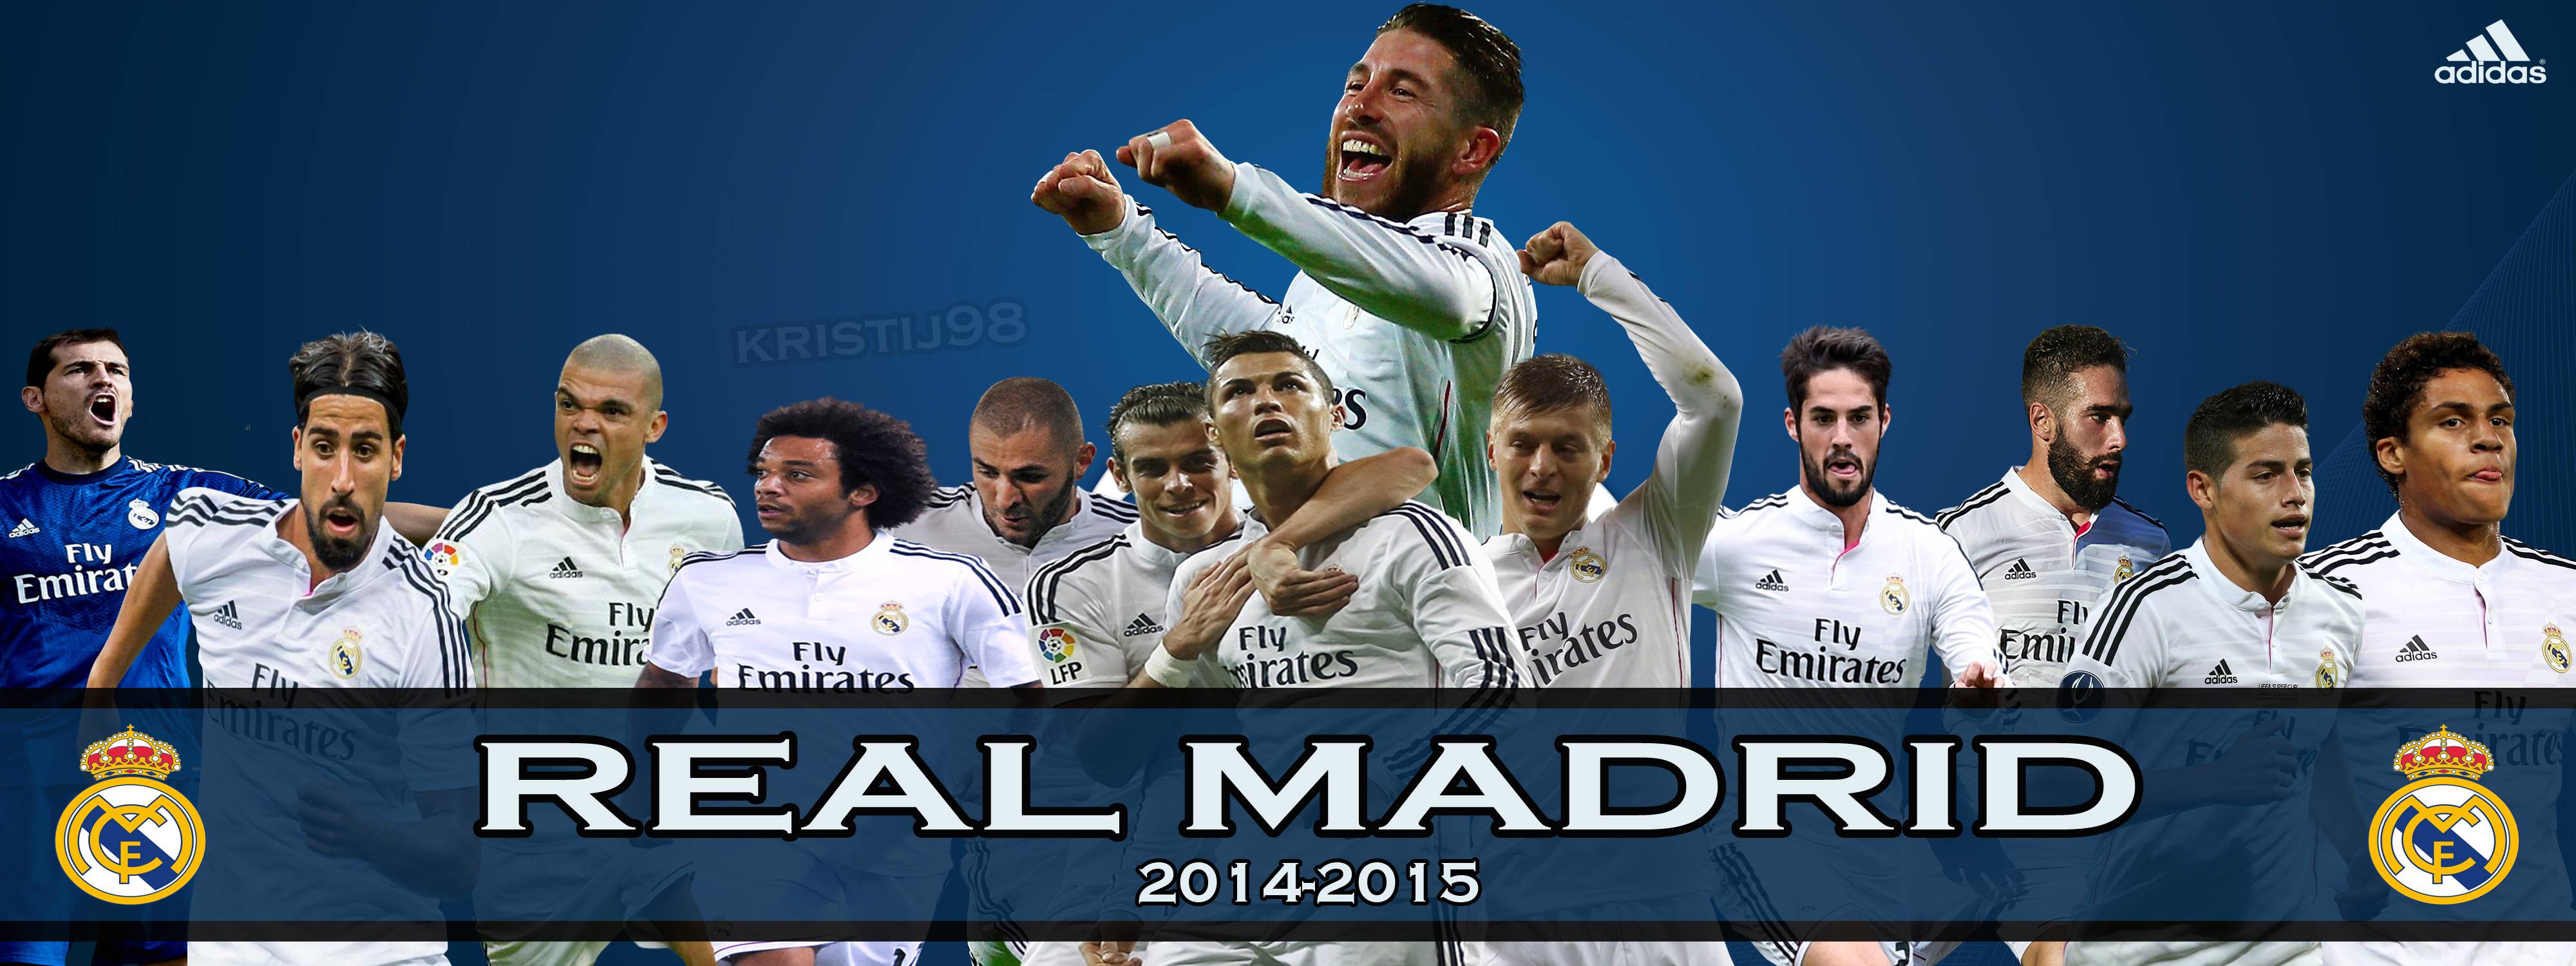 Wallpapers Real Madrid 2015 Deviantart